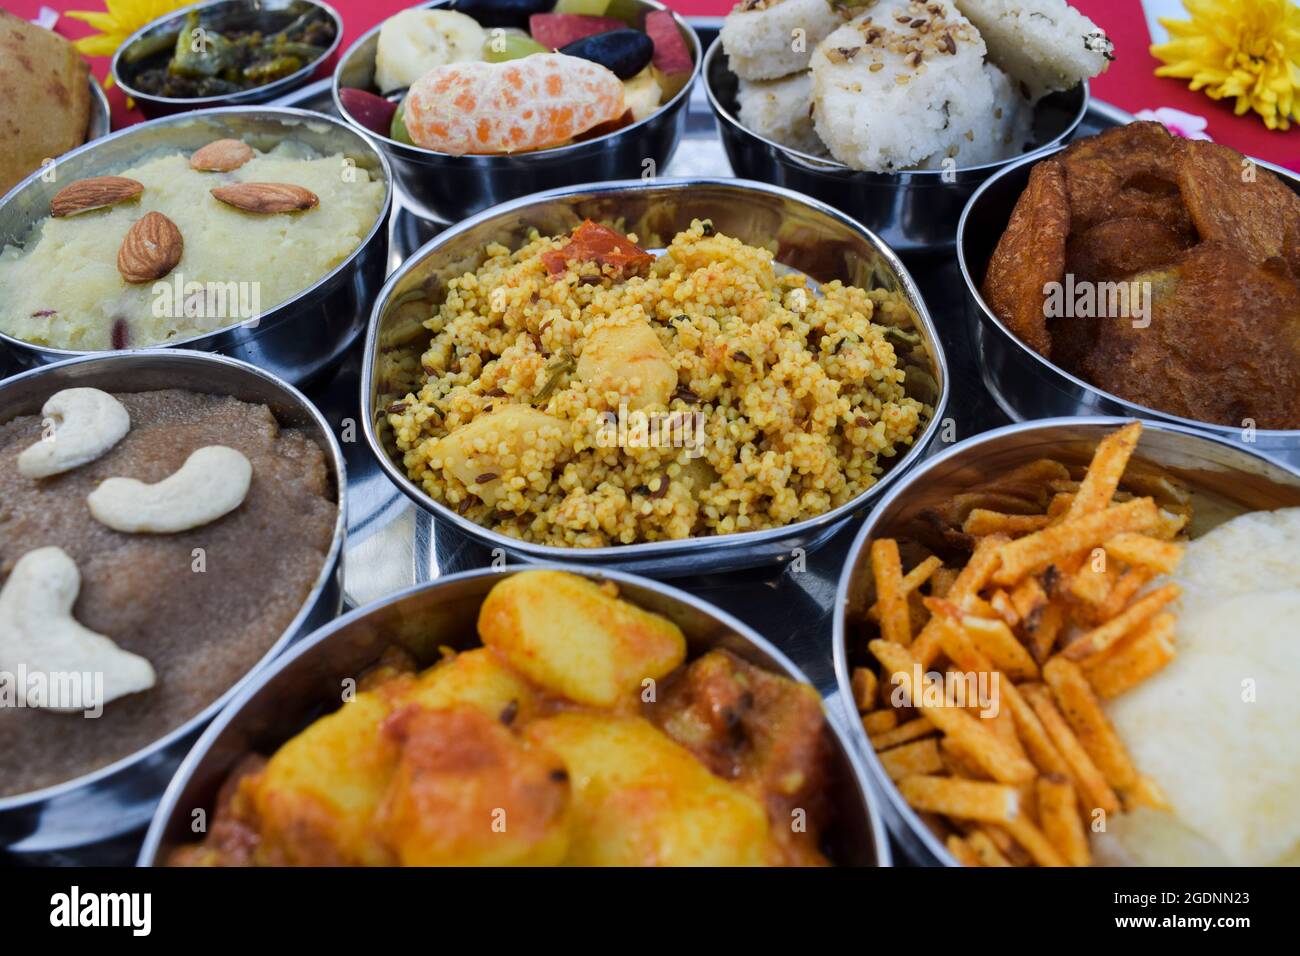 Komplette indische Fastfood-Mahlzeiten Thali-Platte serviert während Sawan mahina oder Saawan Monat mit allen Upwas Zutaten wie Kartoffelkurri, Ragi Sheera, Stockfoto